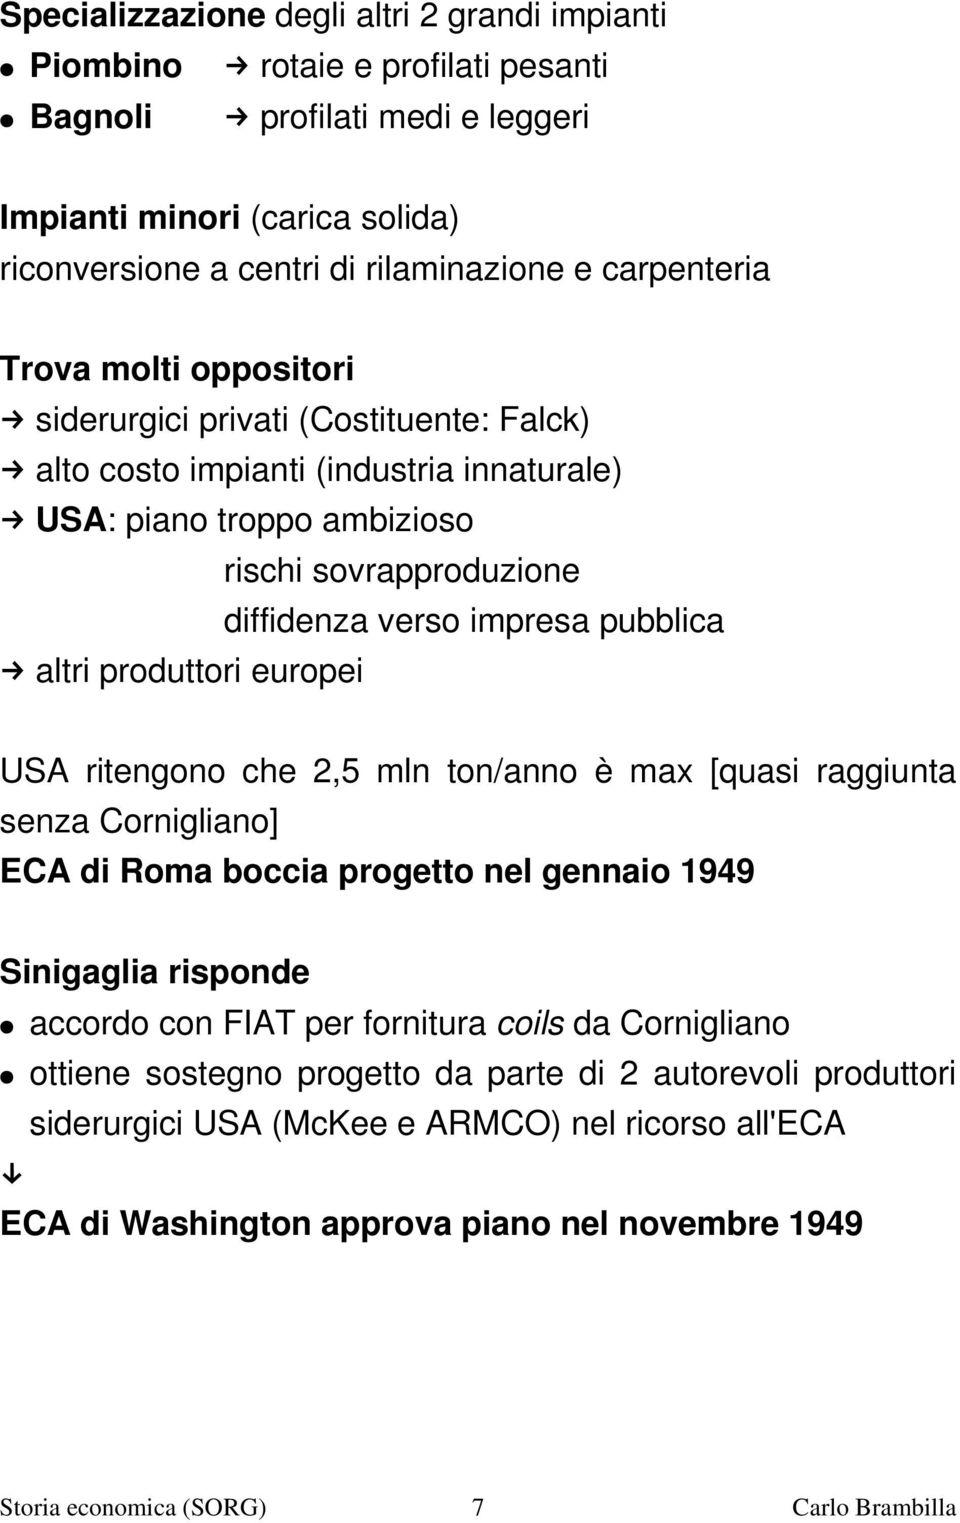 pubblica altri produttori europei USA ritengono che 2,5 mln ton/anno è max [quasi raggiunta senza Cornigliano] ECA di Roma boccia progetto nel gennaio 1949 Sinigaglia risponde accordo con FIAT per